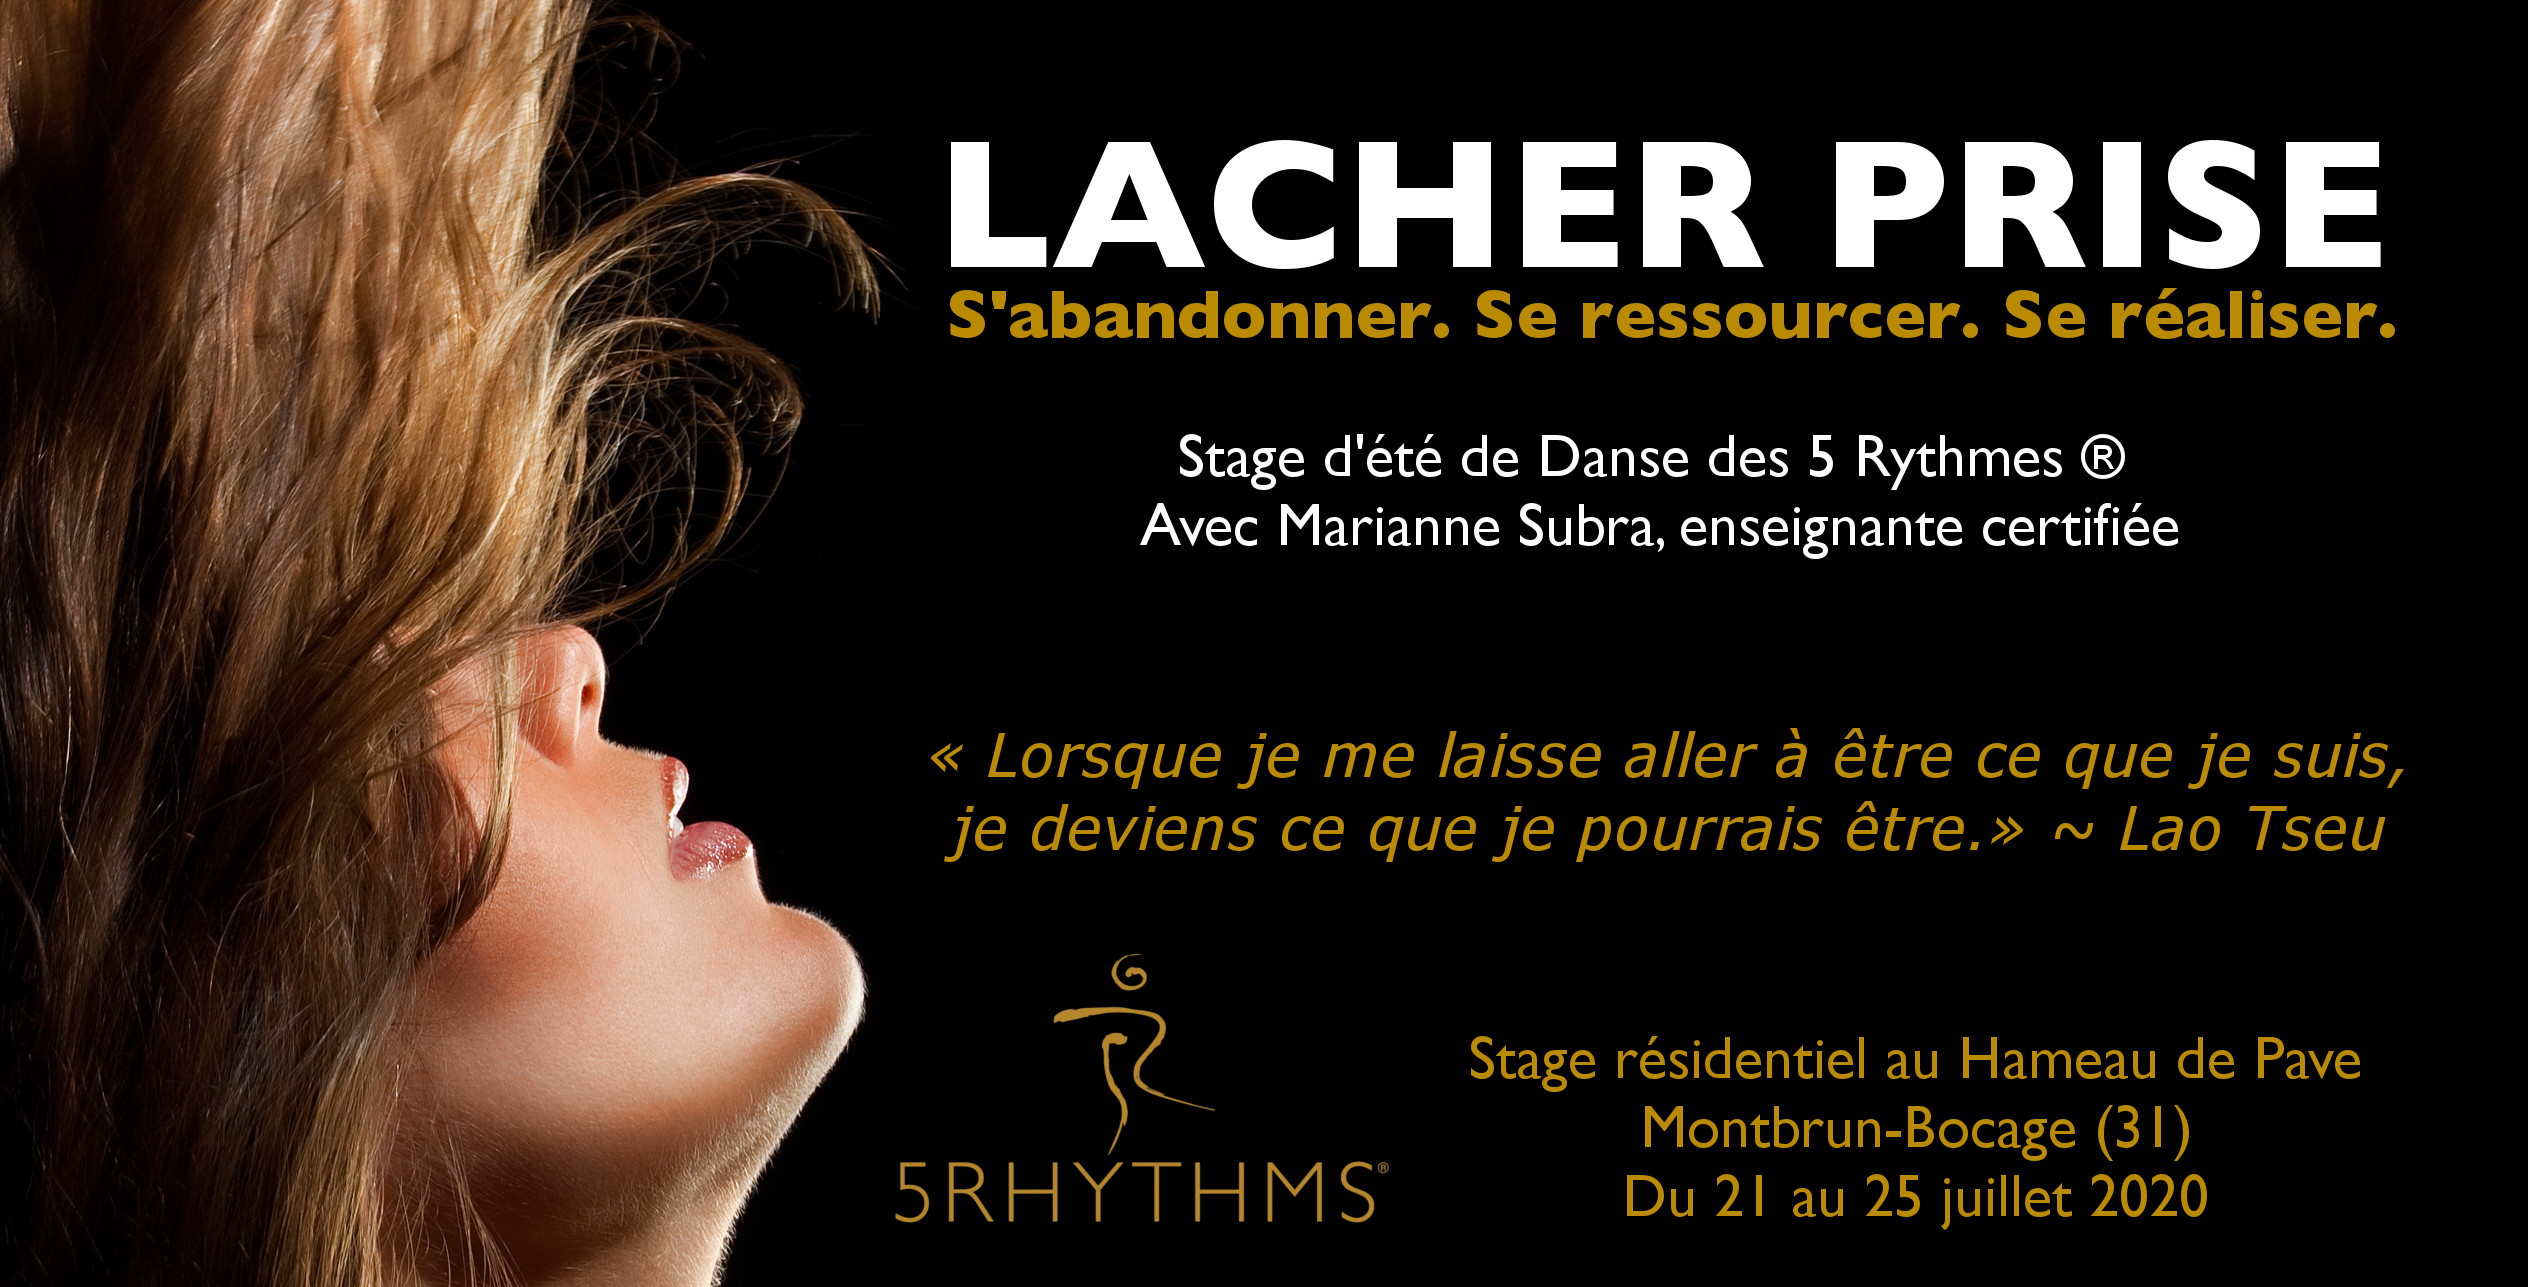 Lacher prise - stage d'été de Danse des 5 Rythmes à Montbrun Bocage avec Marianne Subra